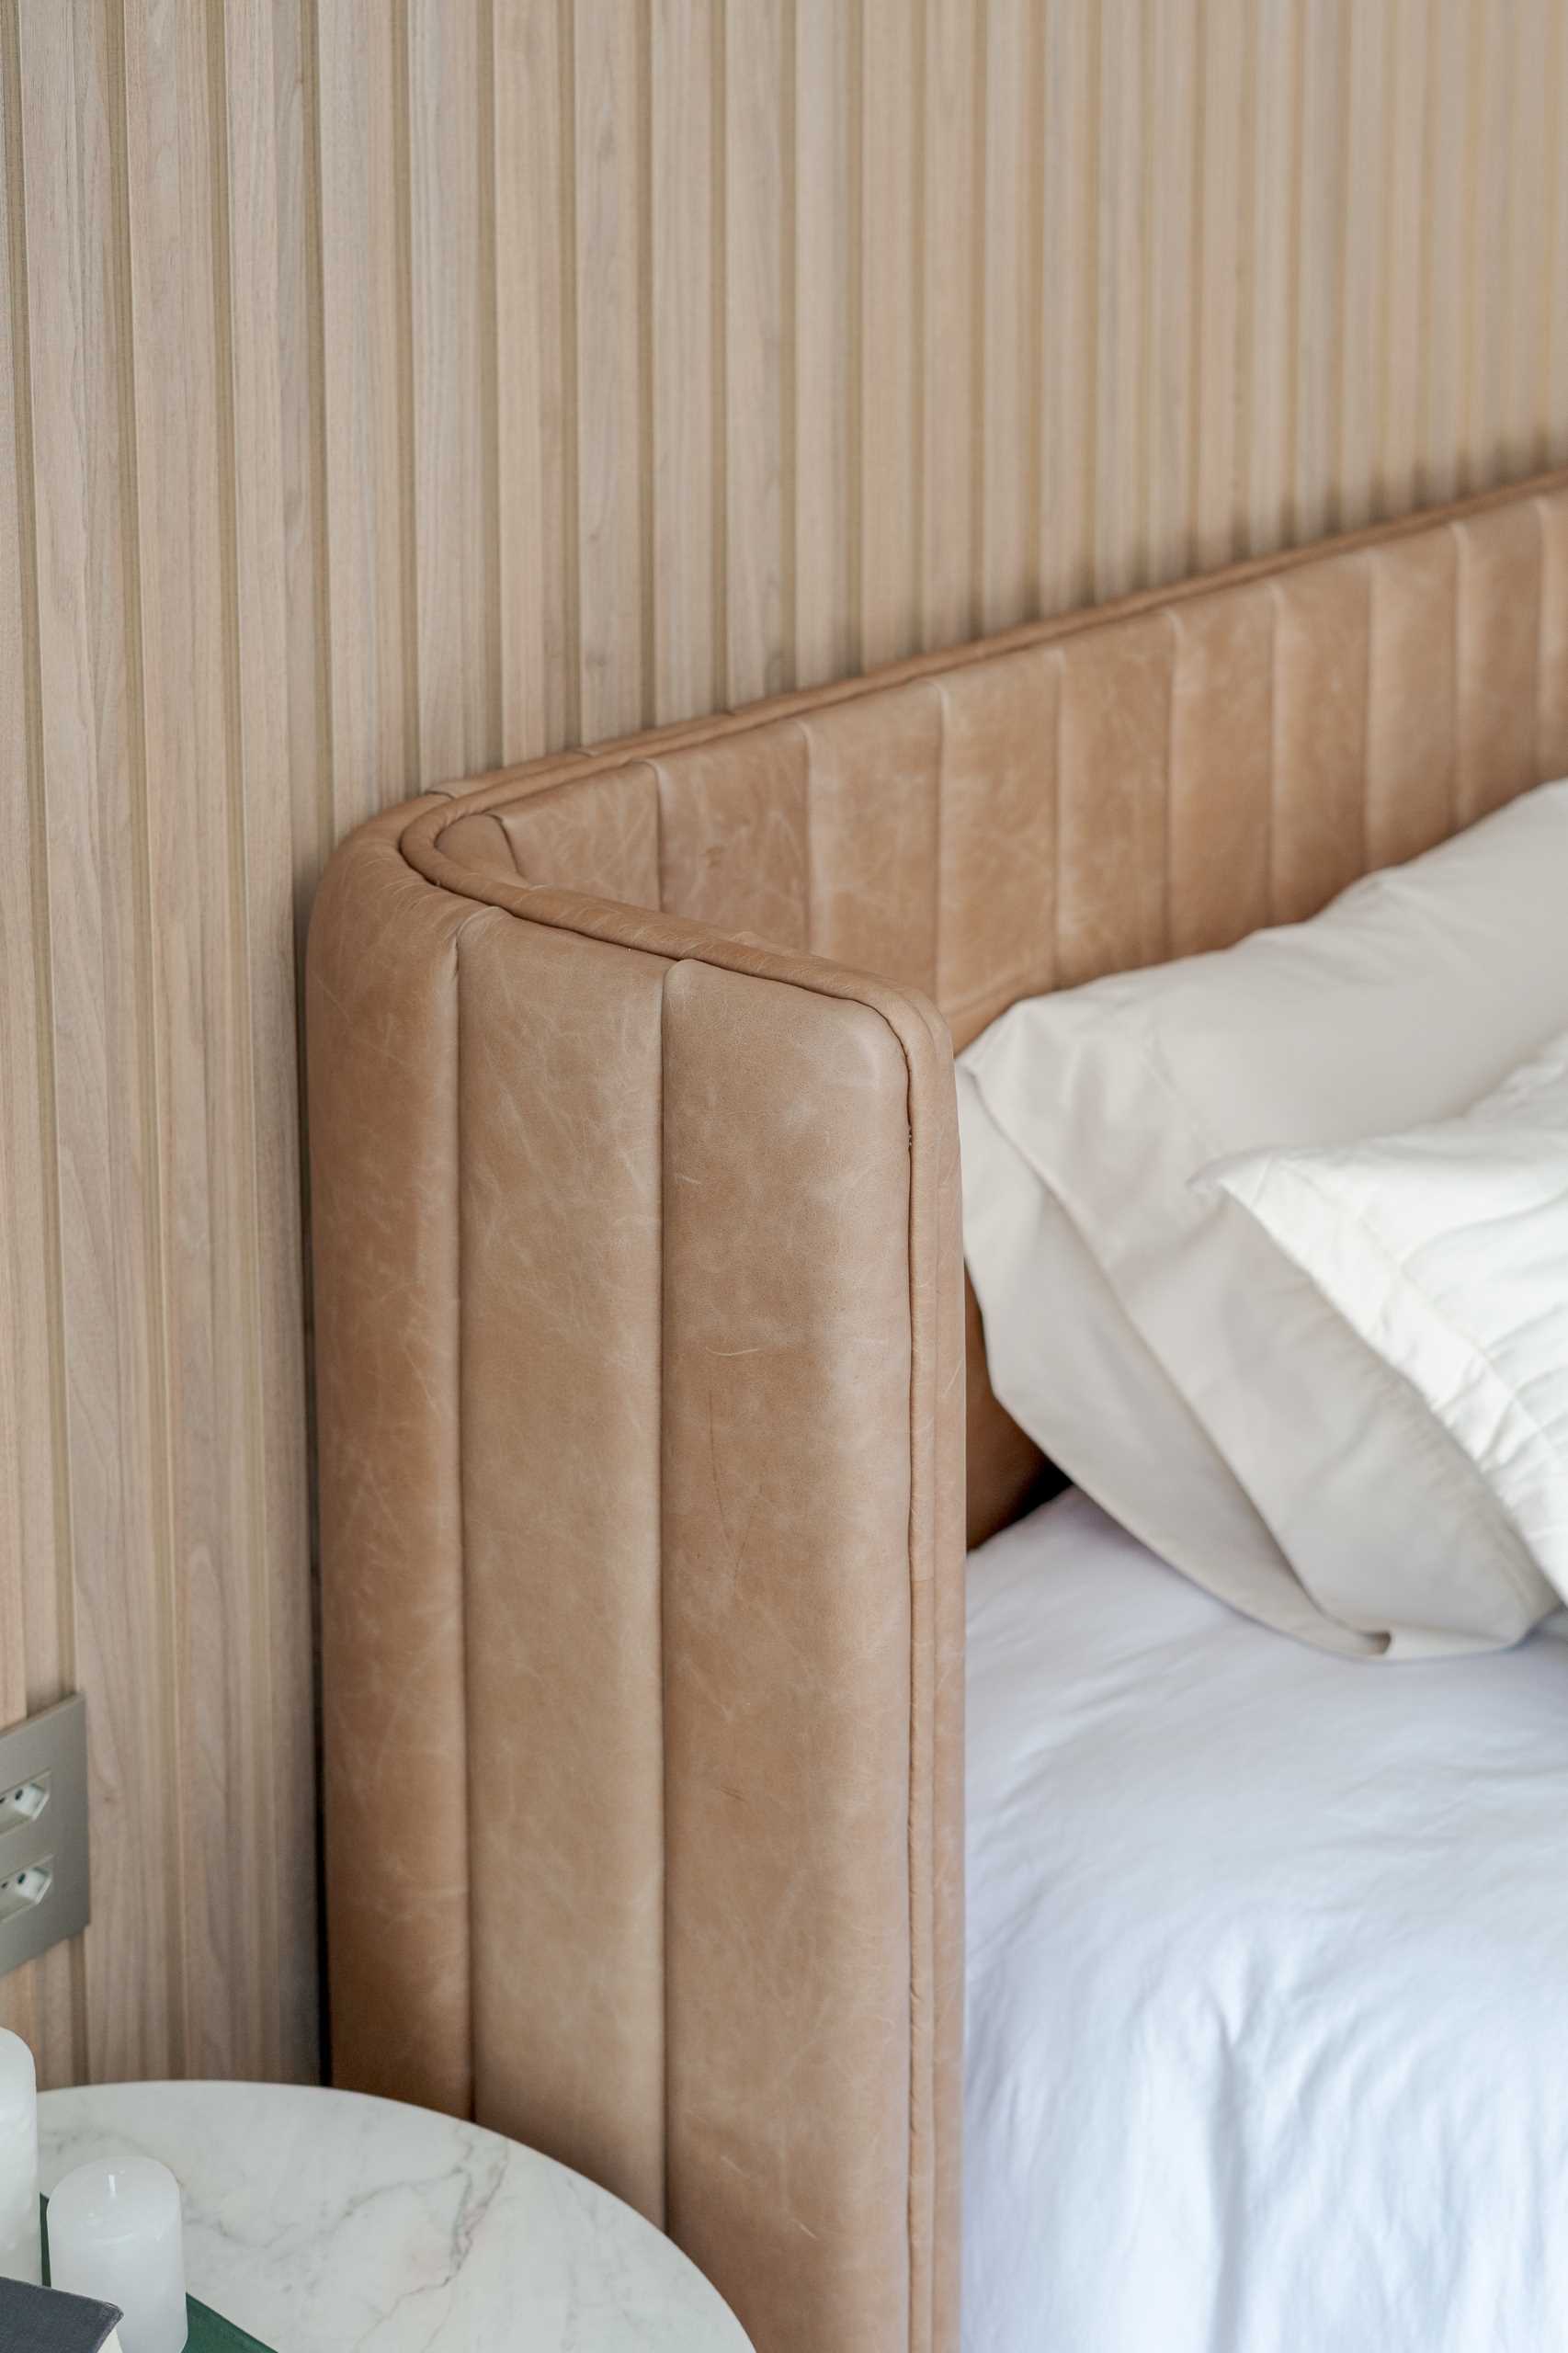 در این اتاق خواب اصلی مدرن، نوارهای چوبی عمودی روی دیوار قرار دارد، در حالی که تخت دارای یک تخته سر منحنی است.